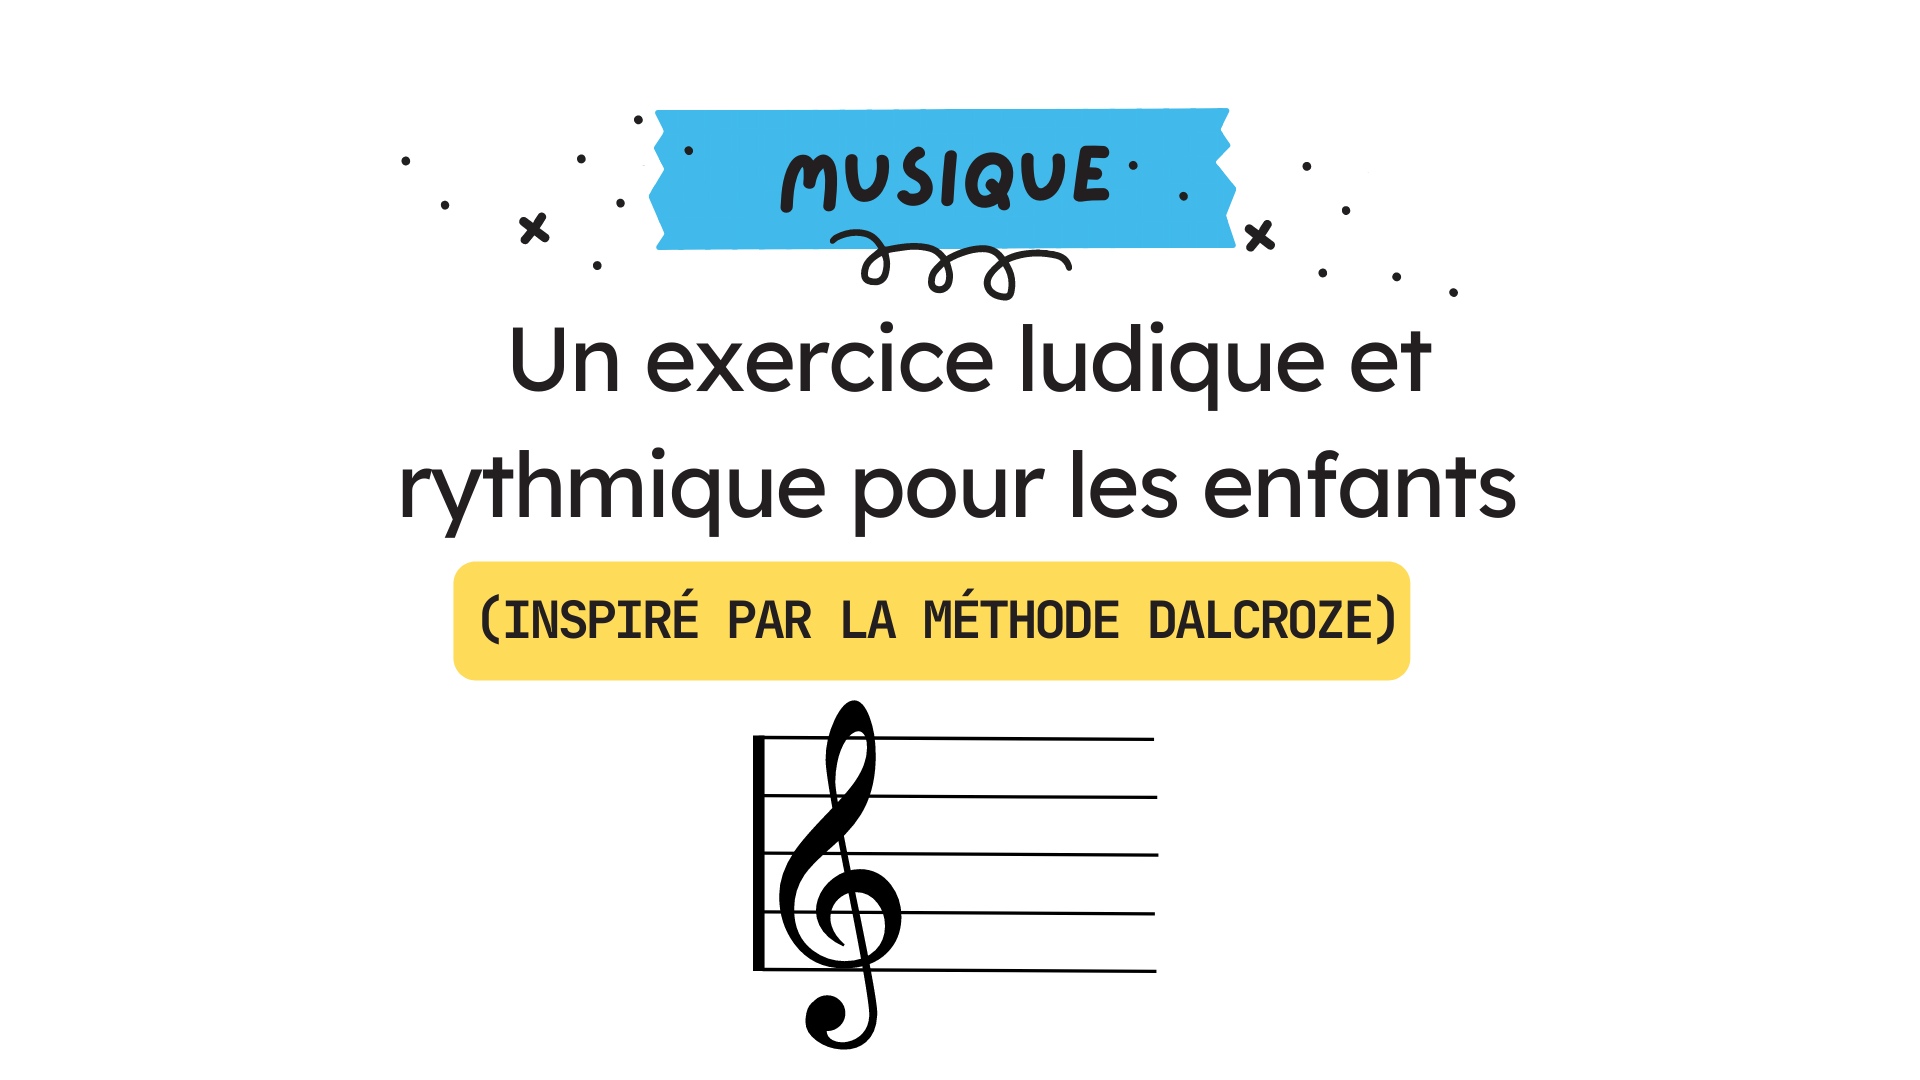 https://apprendreaeduquer.fr/wp-content/uploads/2016/12/jeu-musique-dalcroze.png